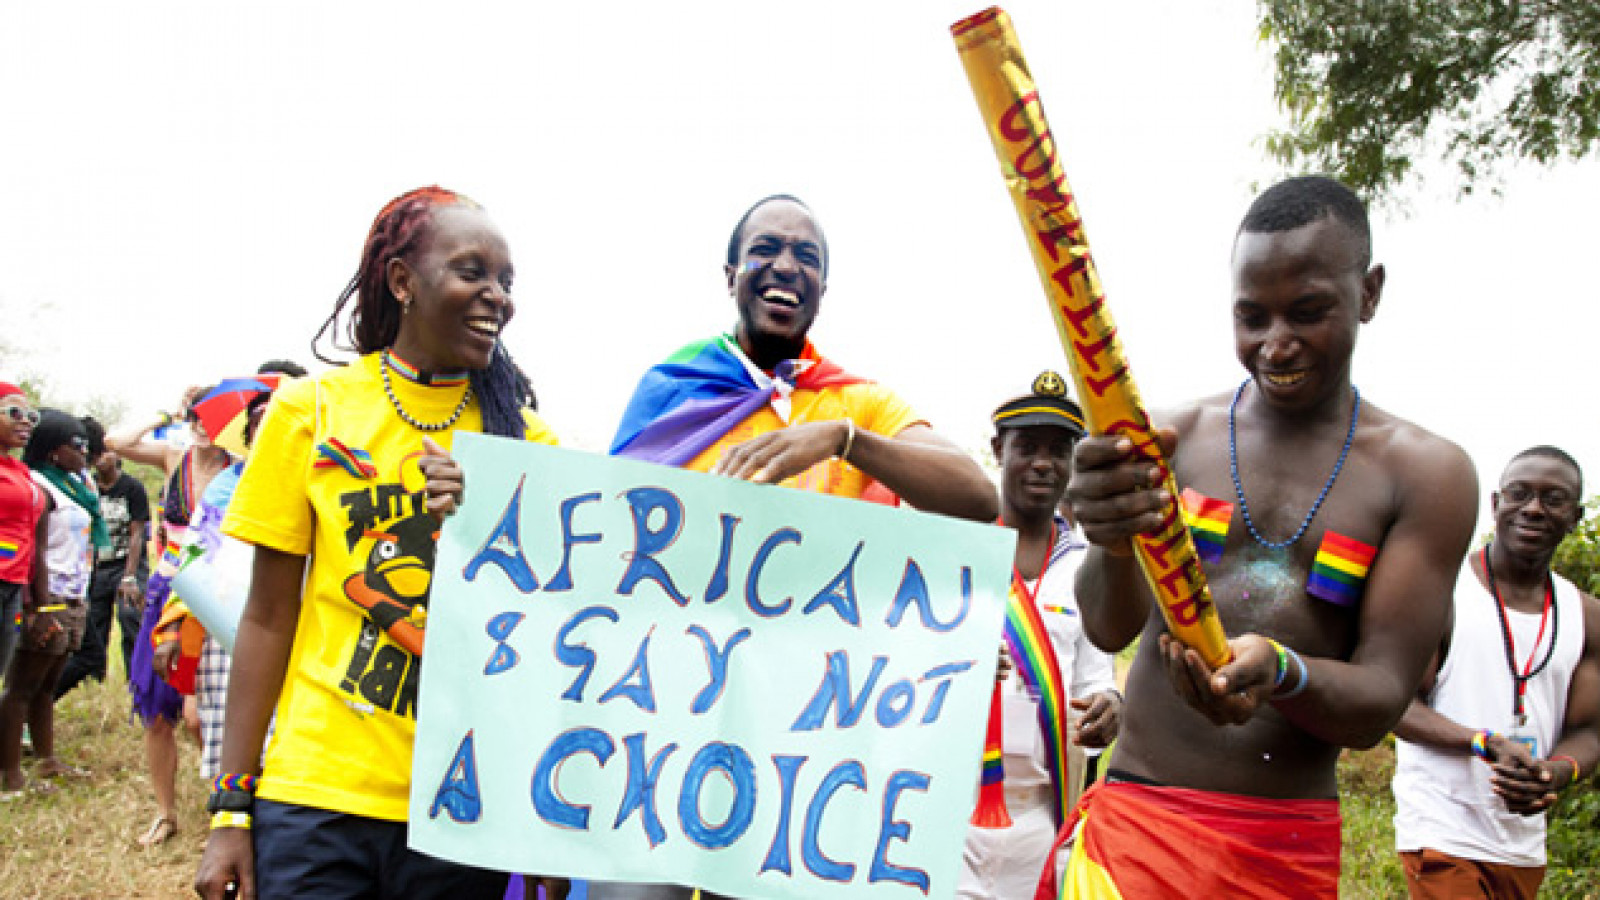 Ser LGBT (Lesbianas, Gays, Bisexuales, Transexuales) en África hoy: realidades y desafíos